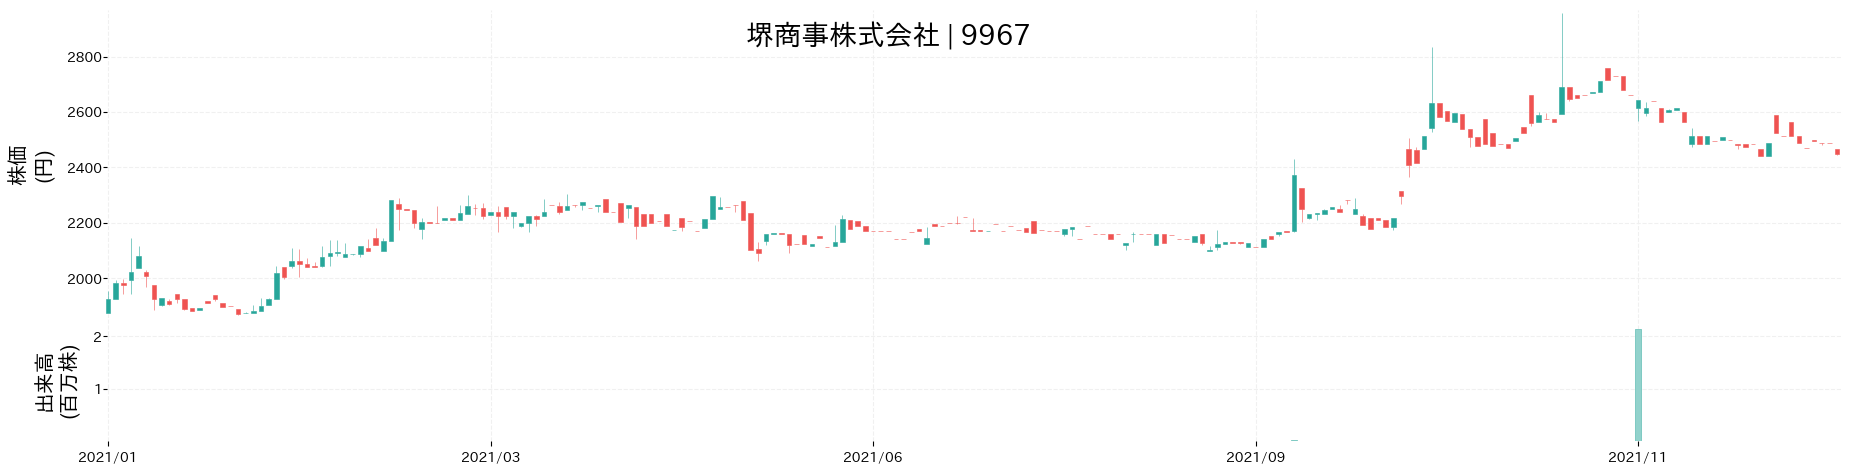 堺商事の株価推移(2021)